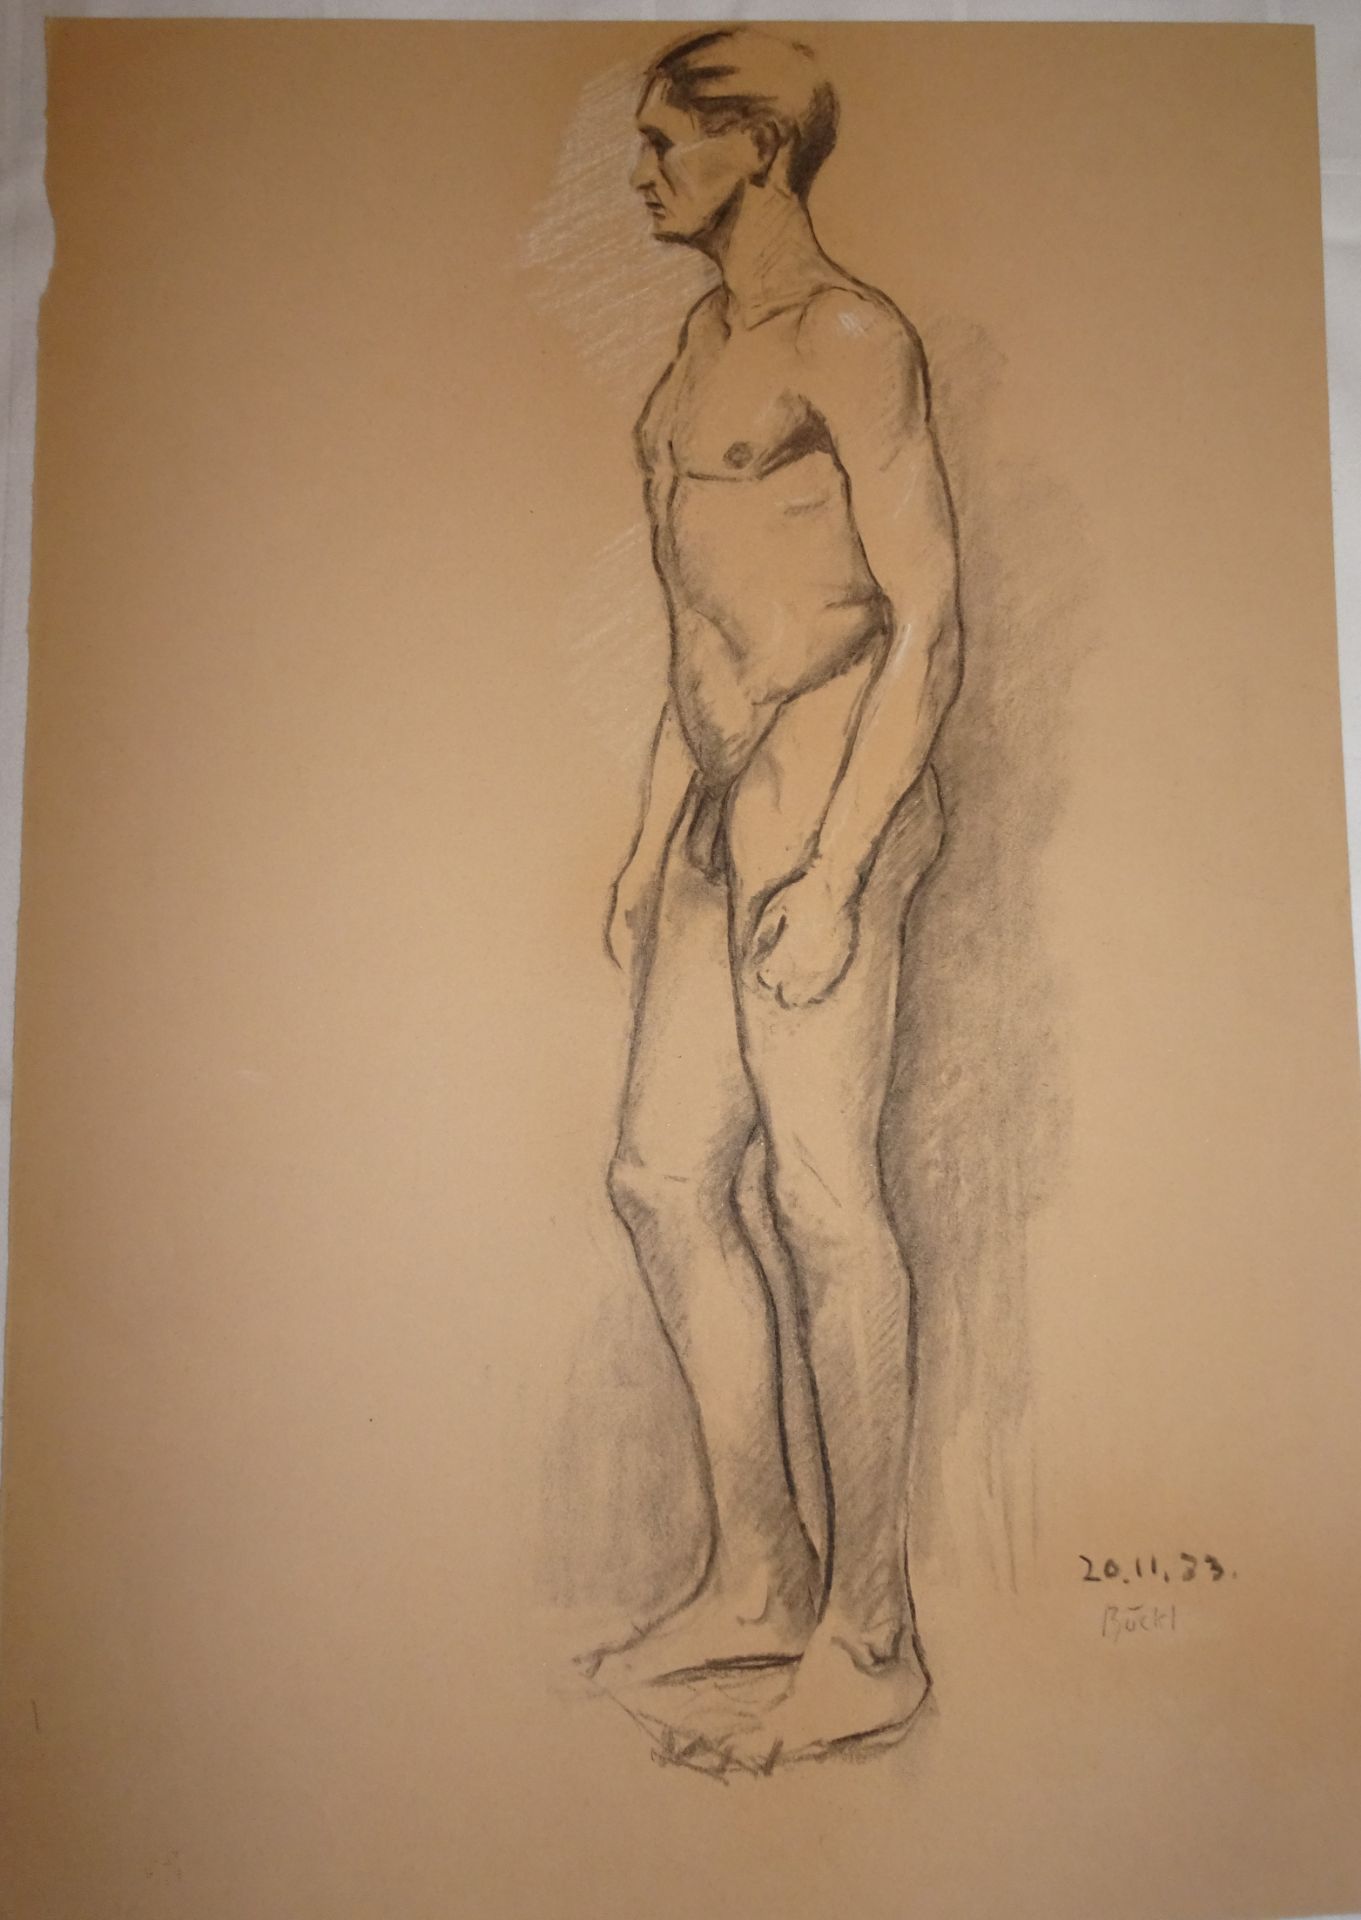 Herbert Böckl (1894-1966), "Männerakt", rechts Signatur 20.11.33 Böckl. Maße: Höhe ca. 50 cm,